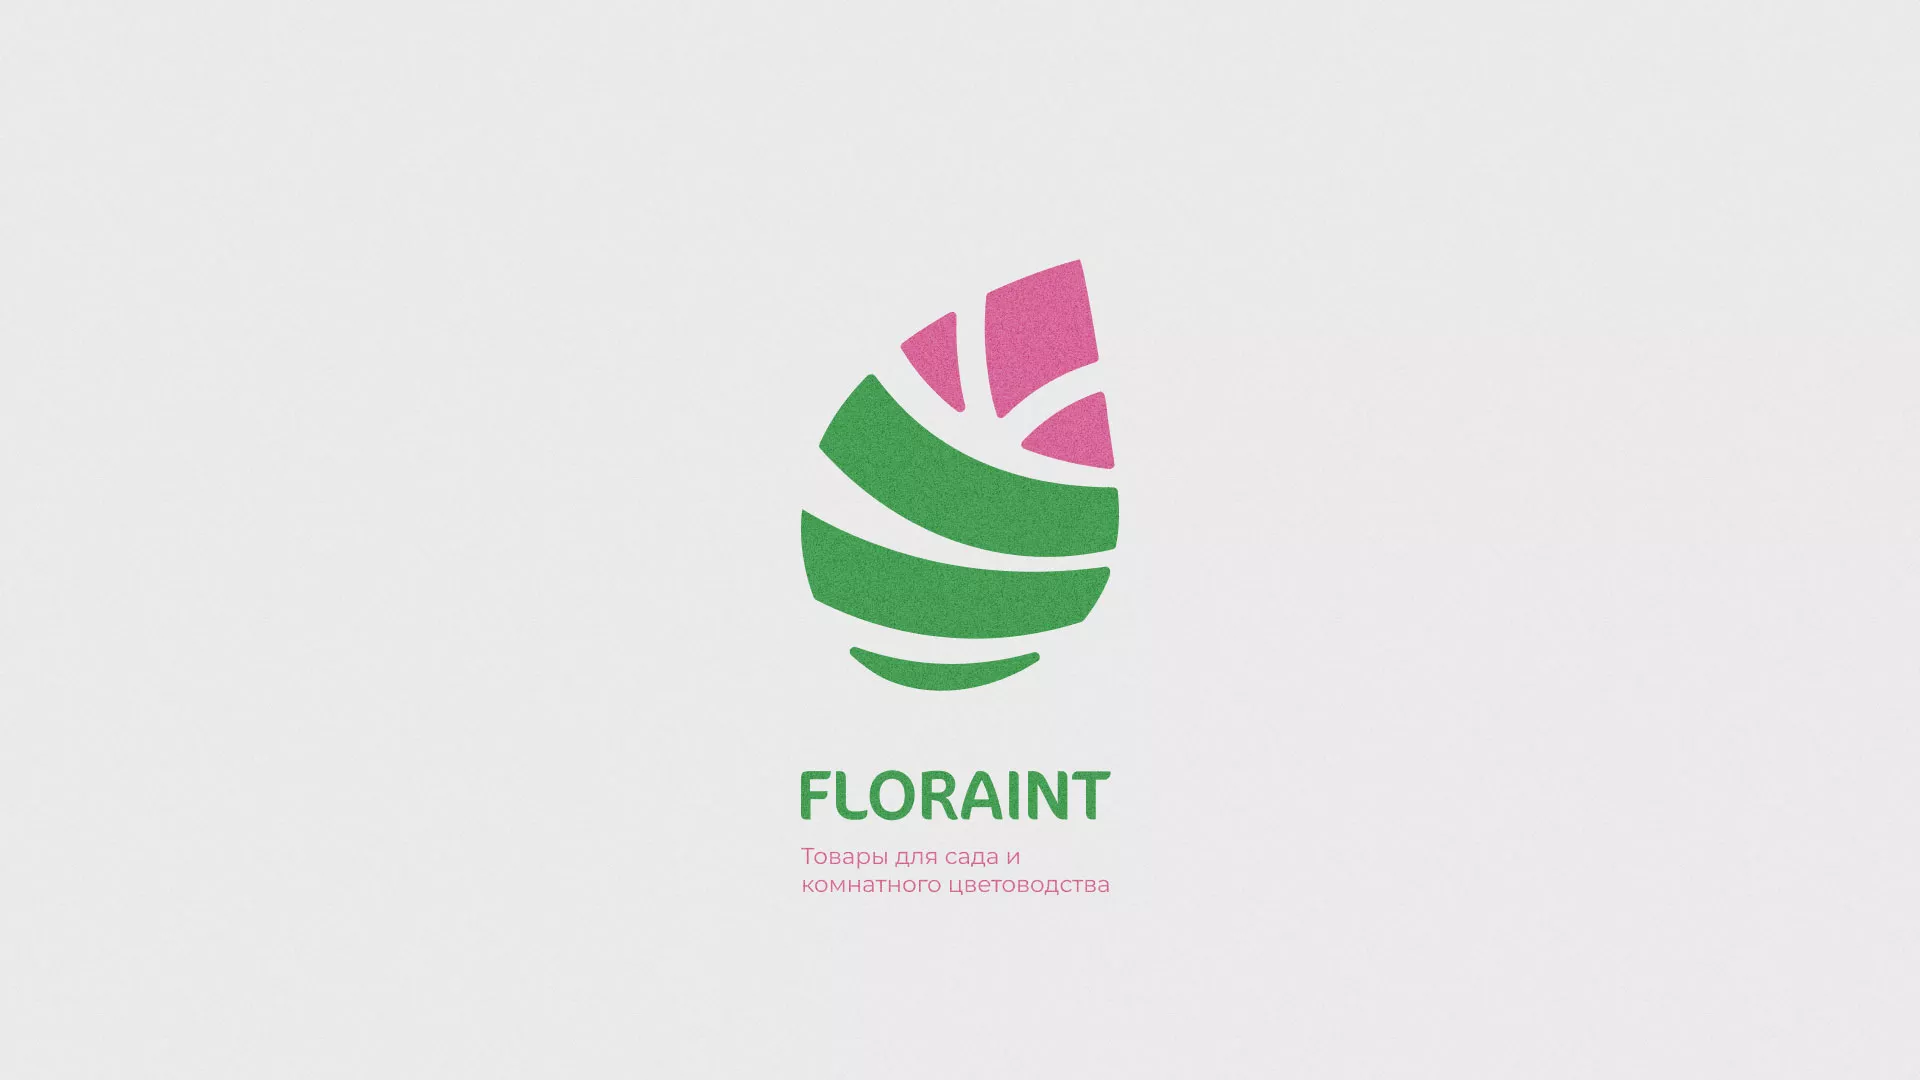 Разработка оформления профиля Instagram для магазина «Floraint» в Болгаре